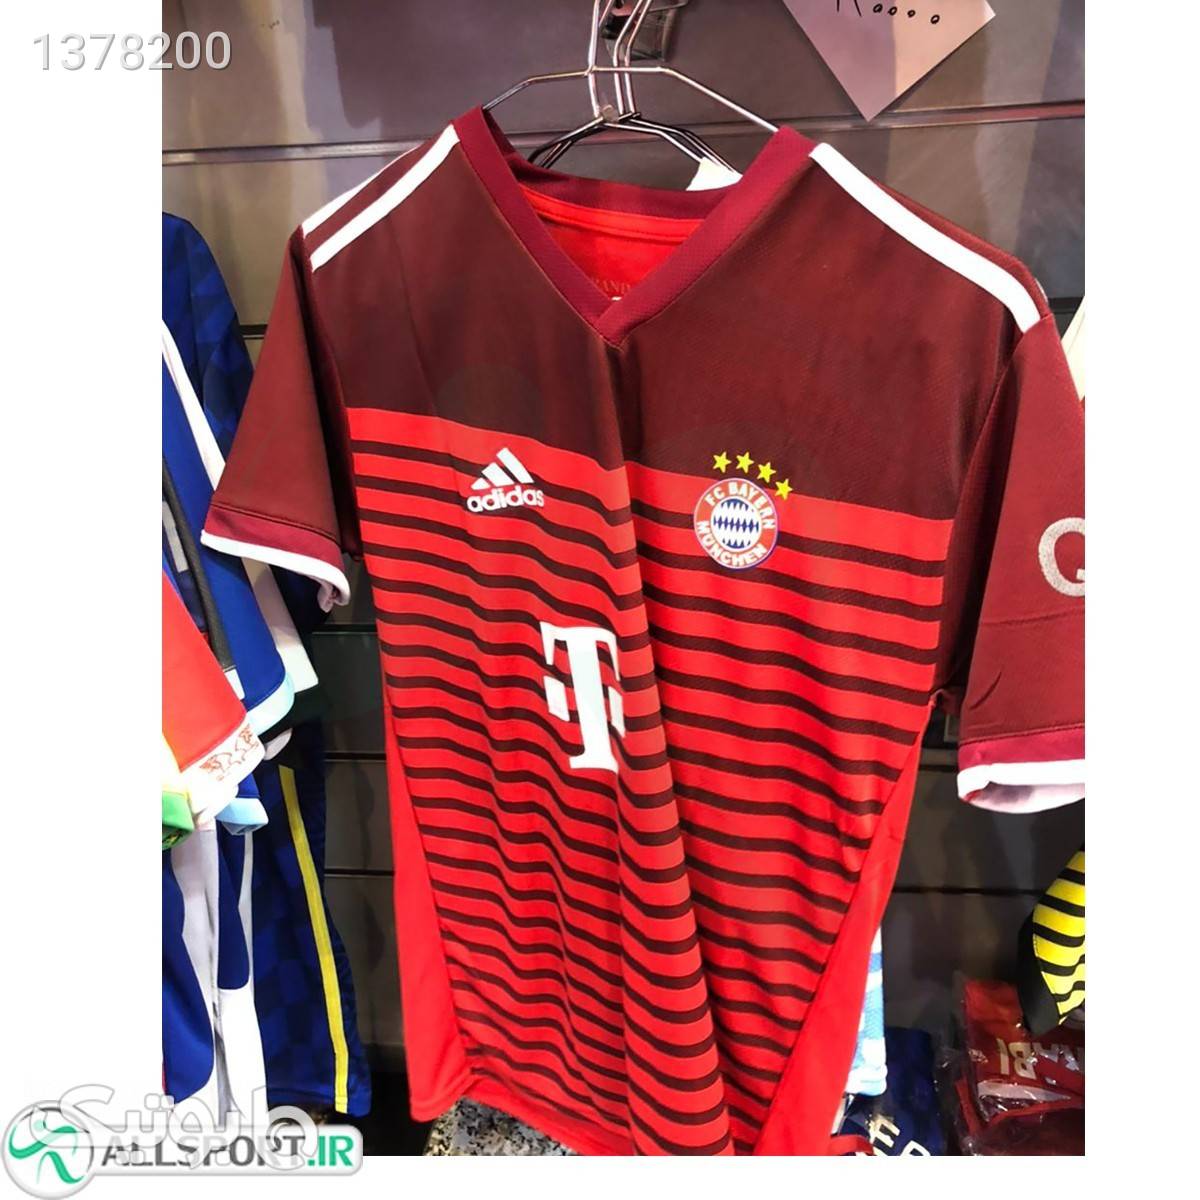 پیراهن شورت بچه گانه اول بایرمونیخ Bayern Munich202122 Home shirt amp; short Soccer Jersey زرشکی لباس کودک پسرانه